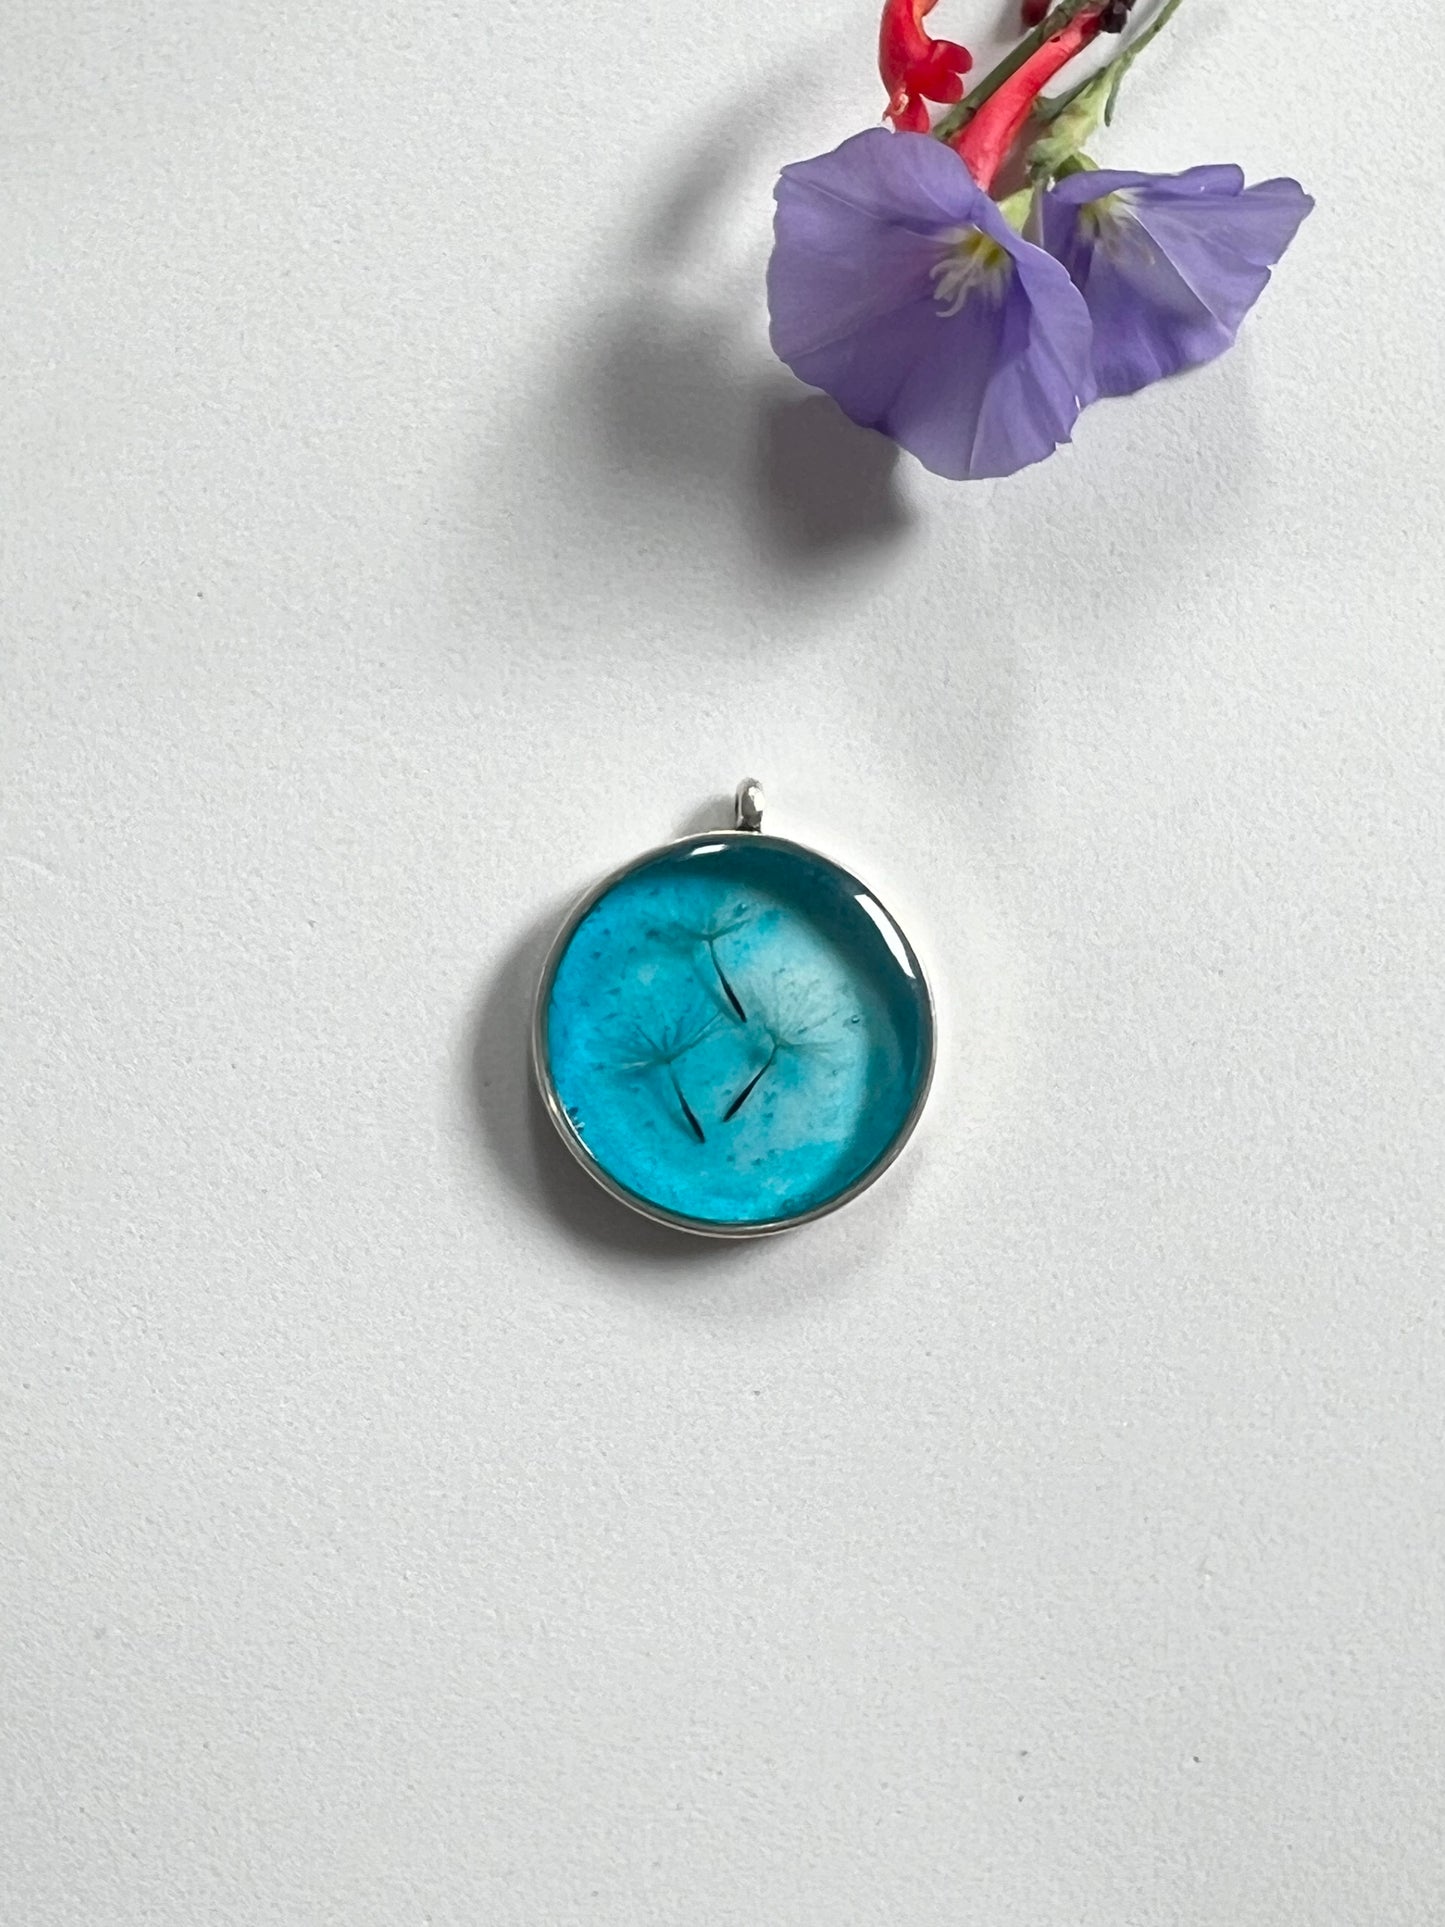 Real Dandelion Framed in Water drop effect Resin jewelry